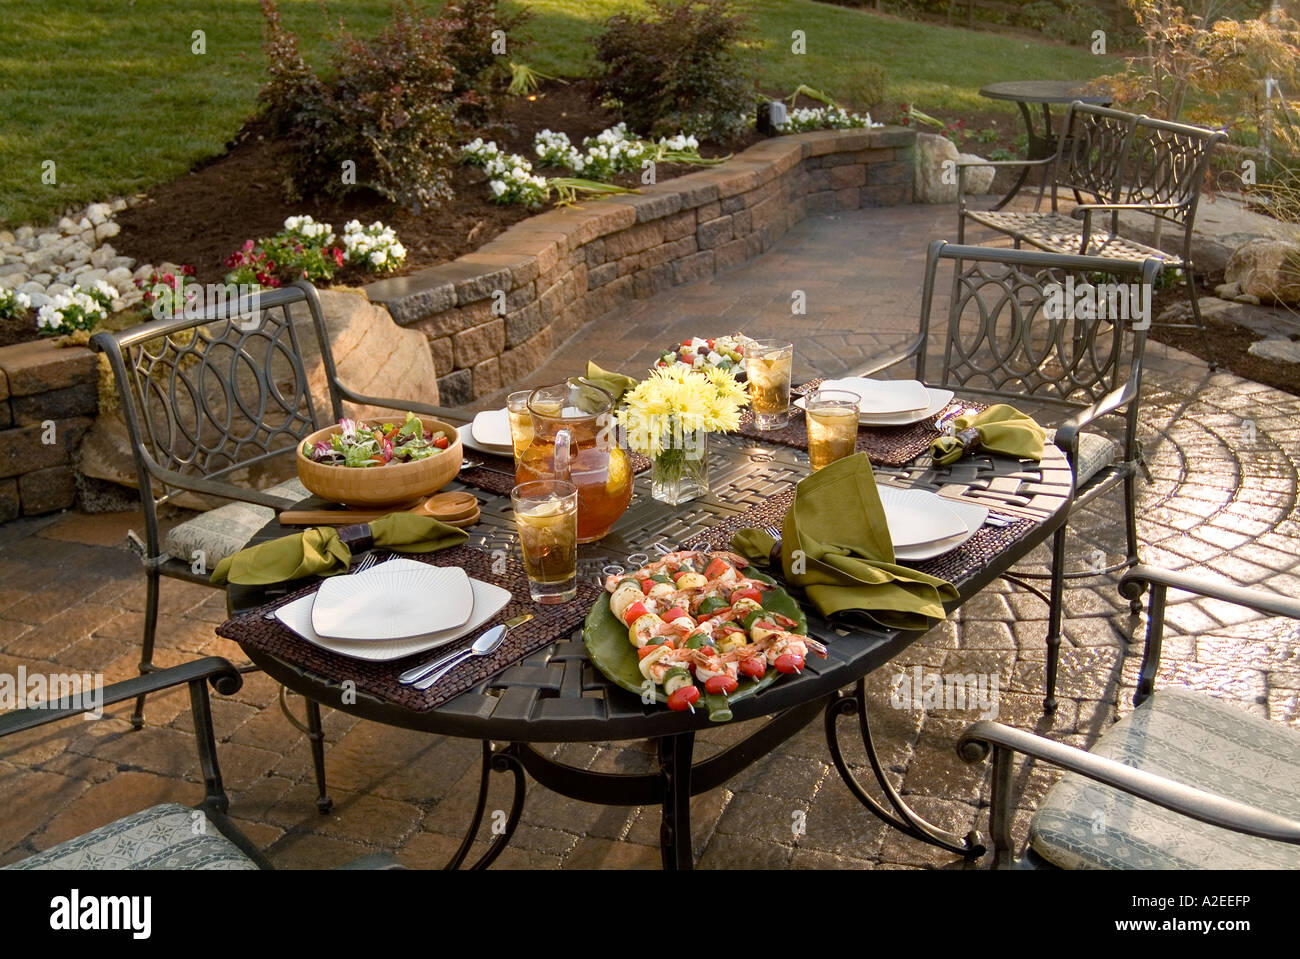 Terrasse avec patio dans le tableau d'alimentation pour partie de barbecue Banque D'Images